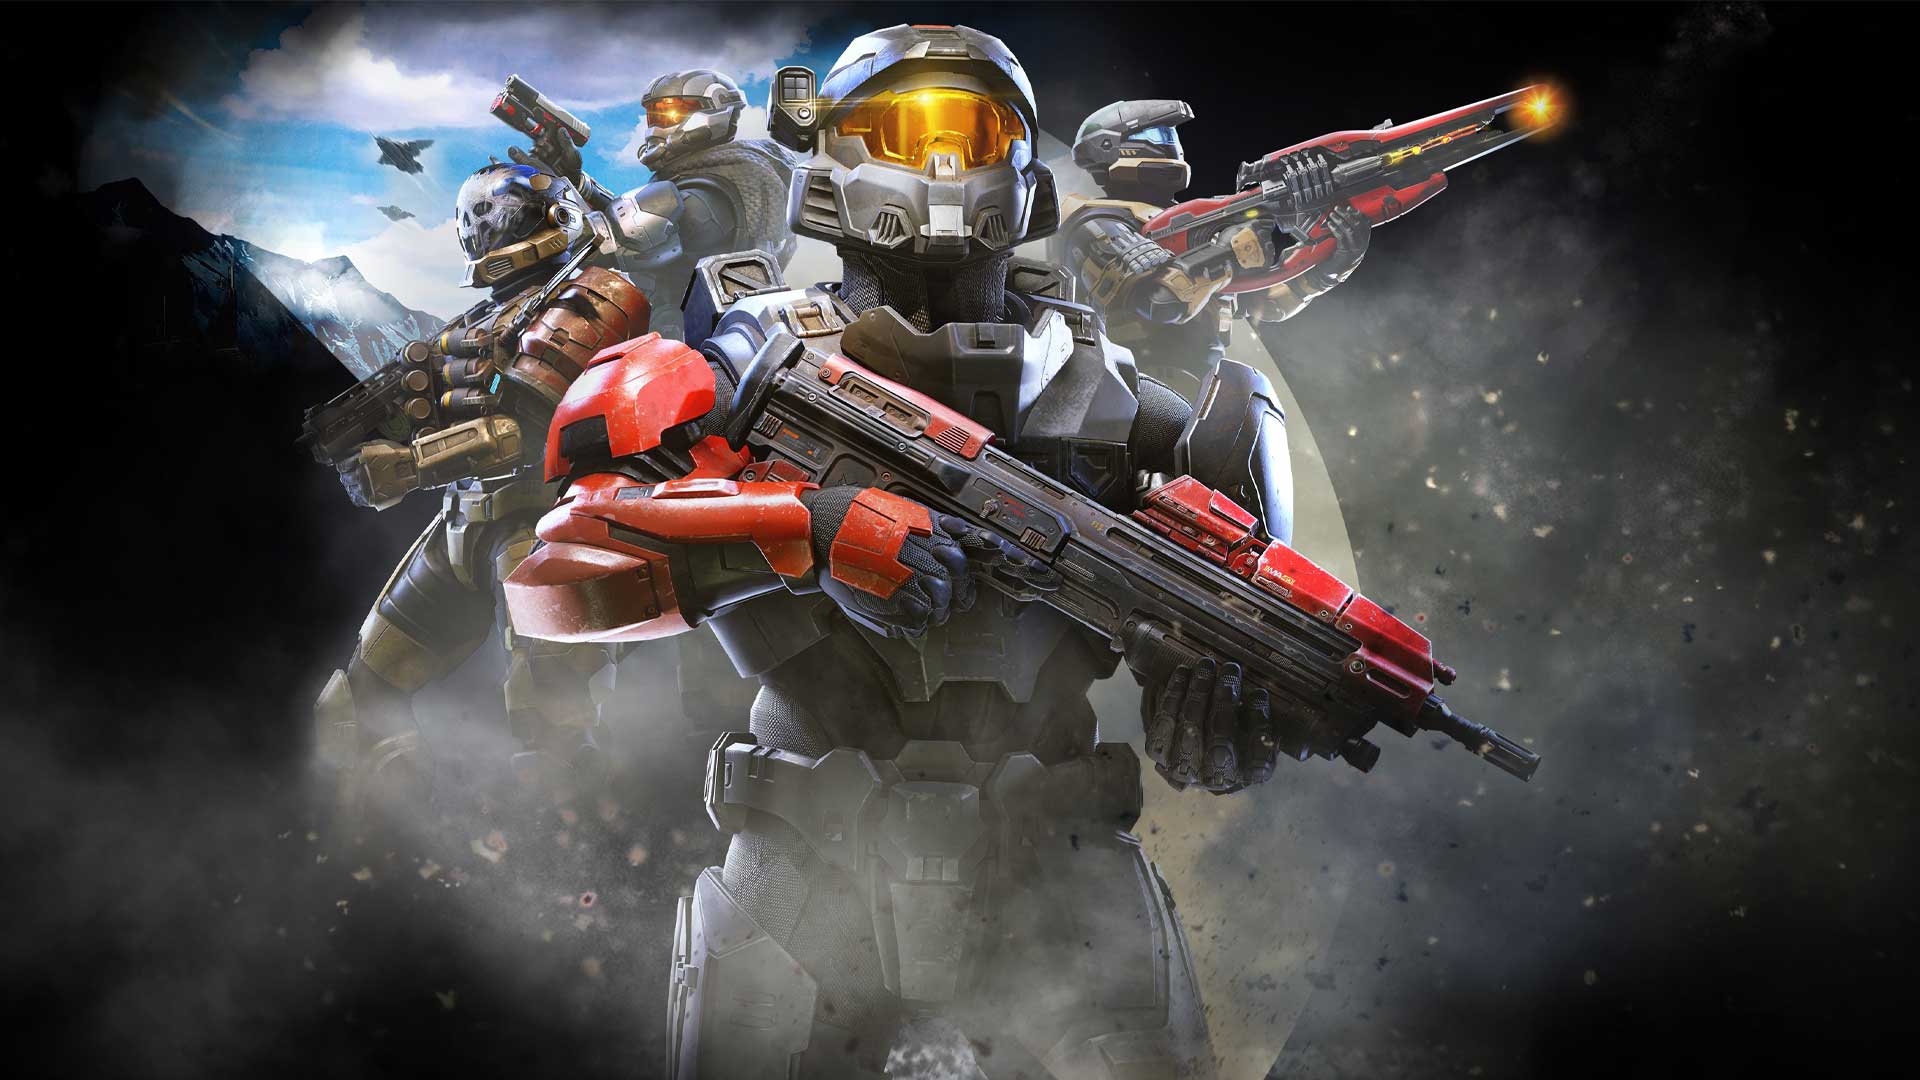 نمایش جدید بازی Halo Infinite به داستان سری پرداخت + تریلر